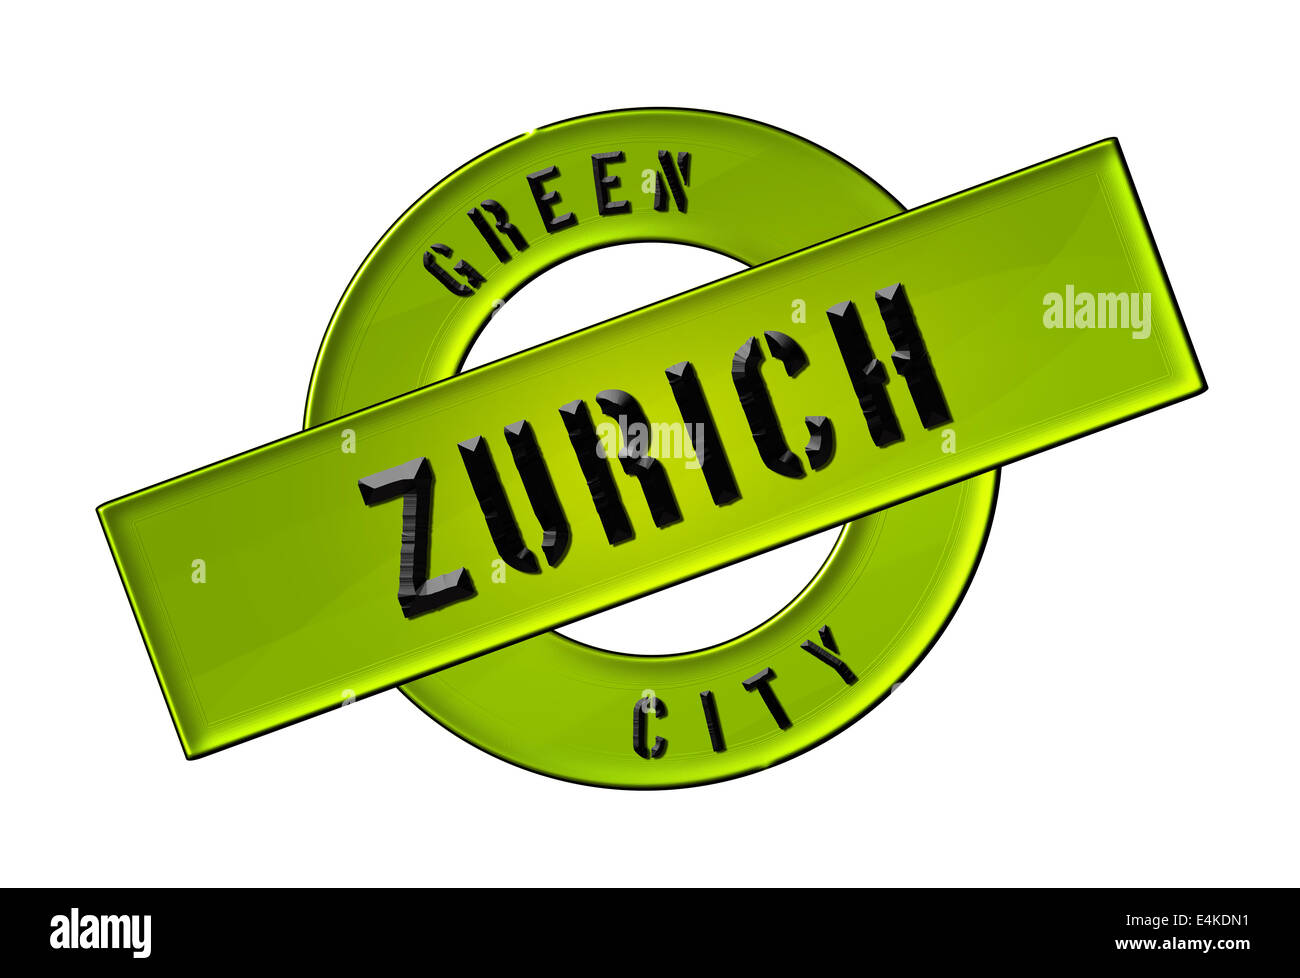 GREEN CITY ZURICH Stock Photo